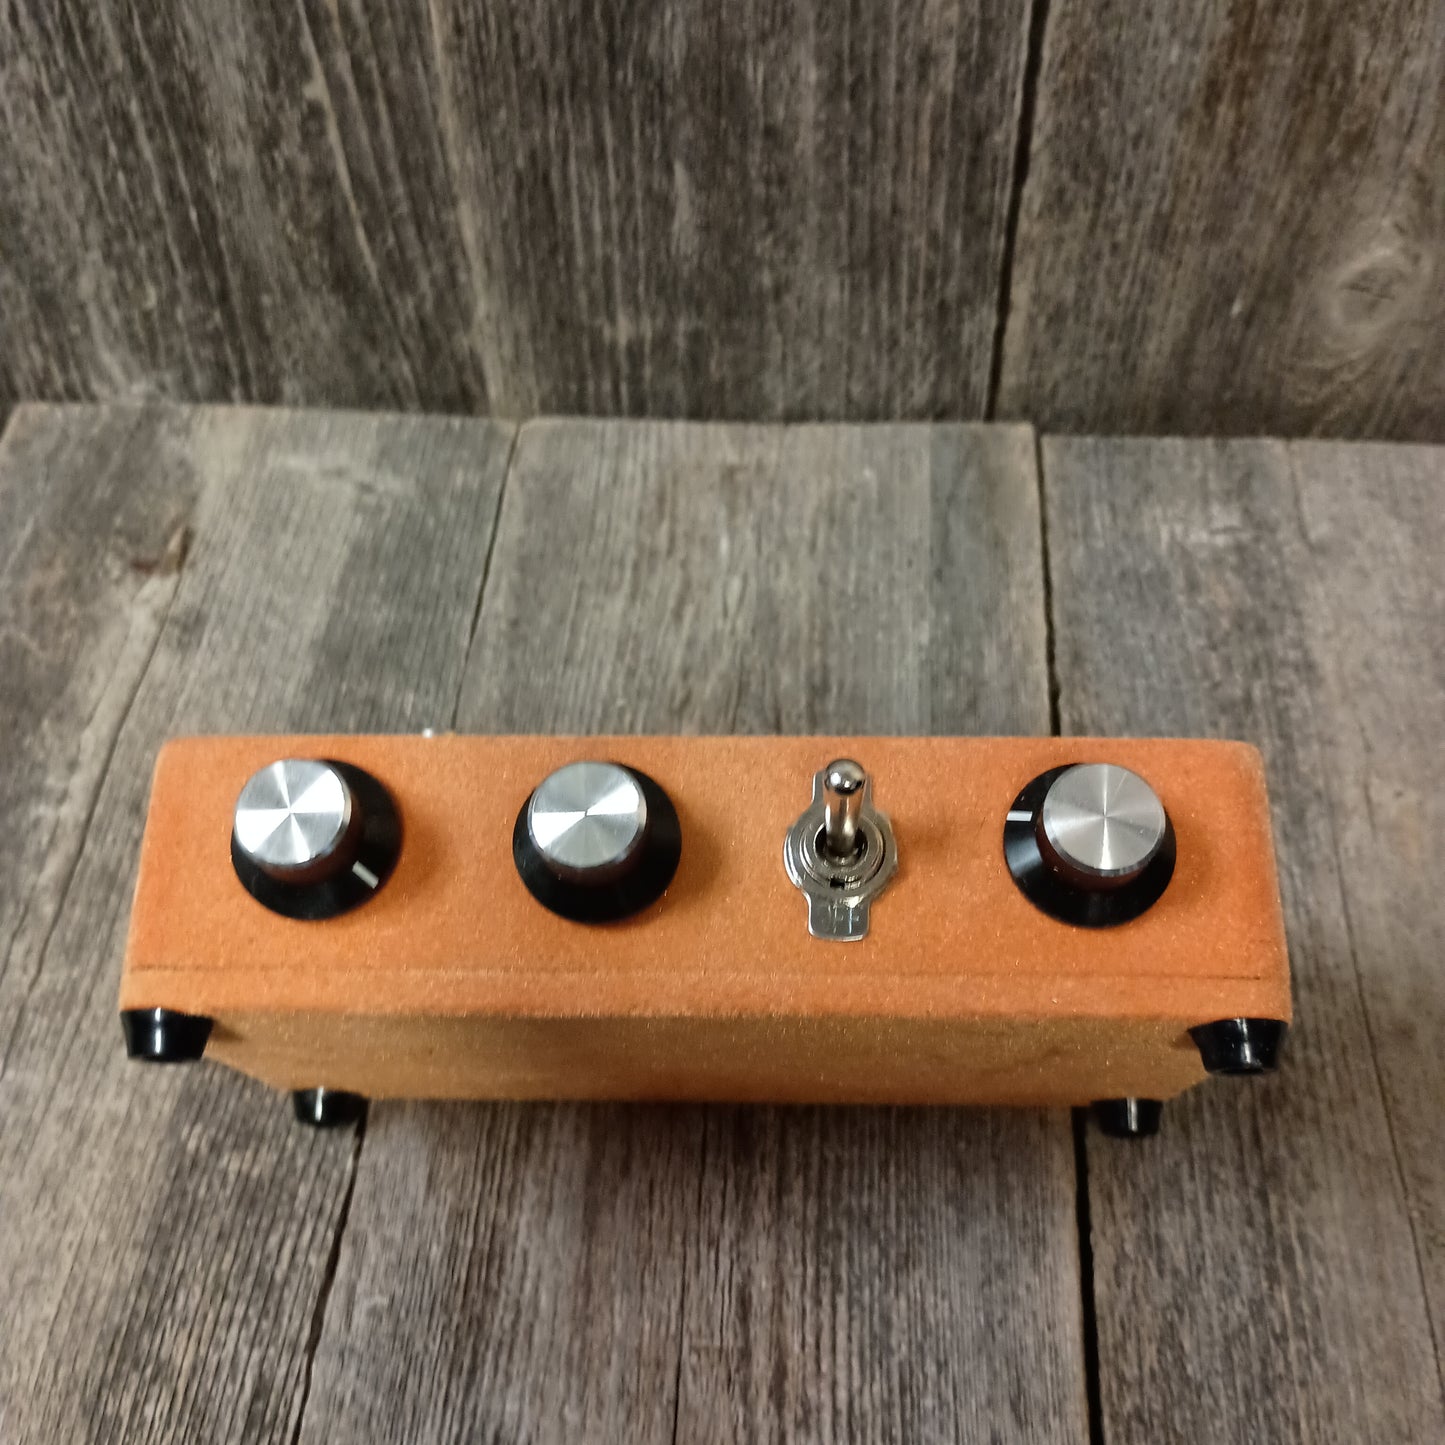 Warm Audio Foxy Tone Box Fuzz Pedal - Used